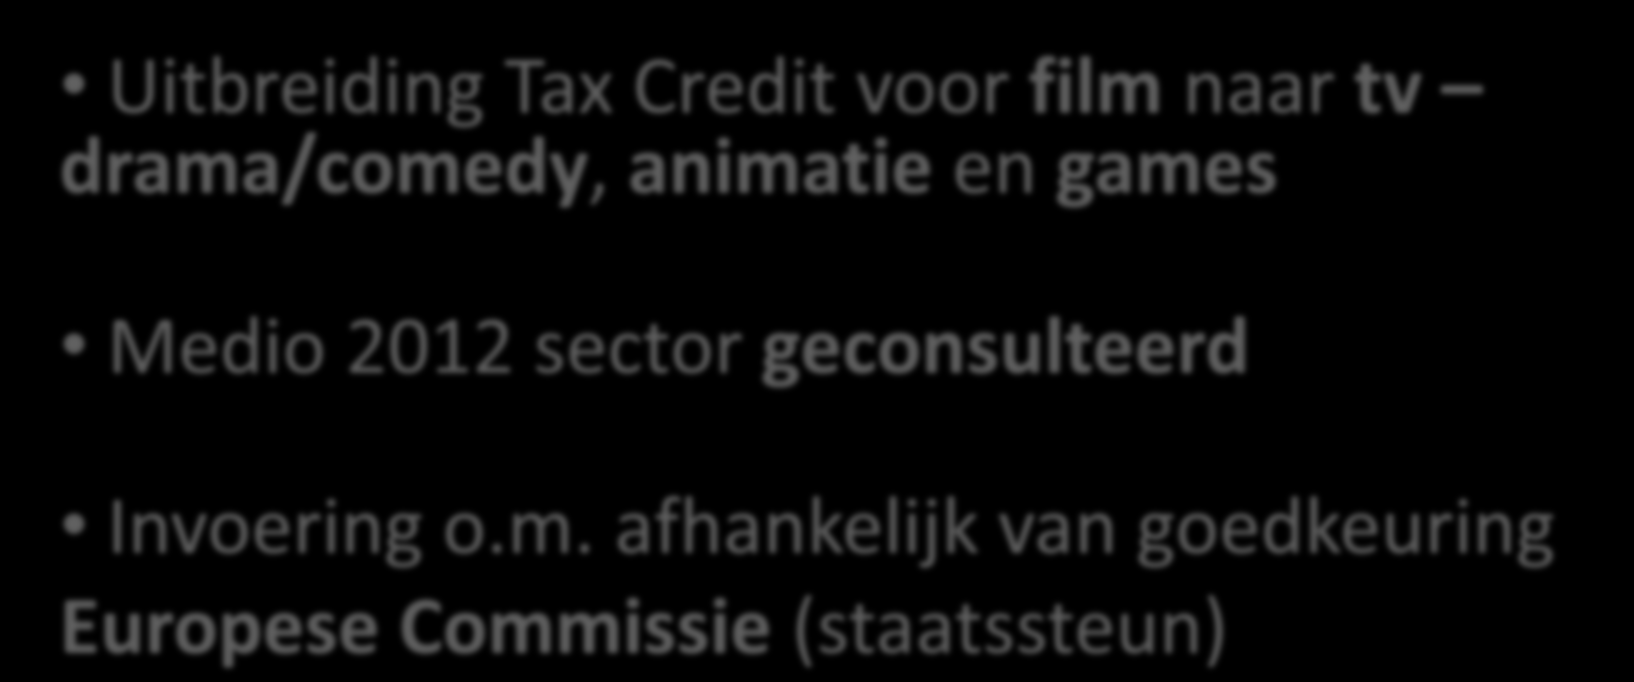 Vanaf voorjaar 2013 in UK Uitbreiding Tax Credit voor film naar tv drama/comedy, animatie en games